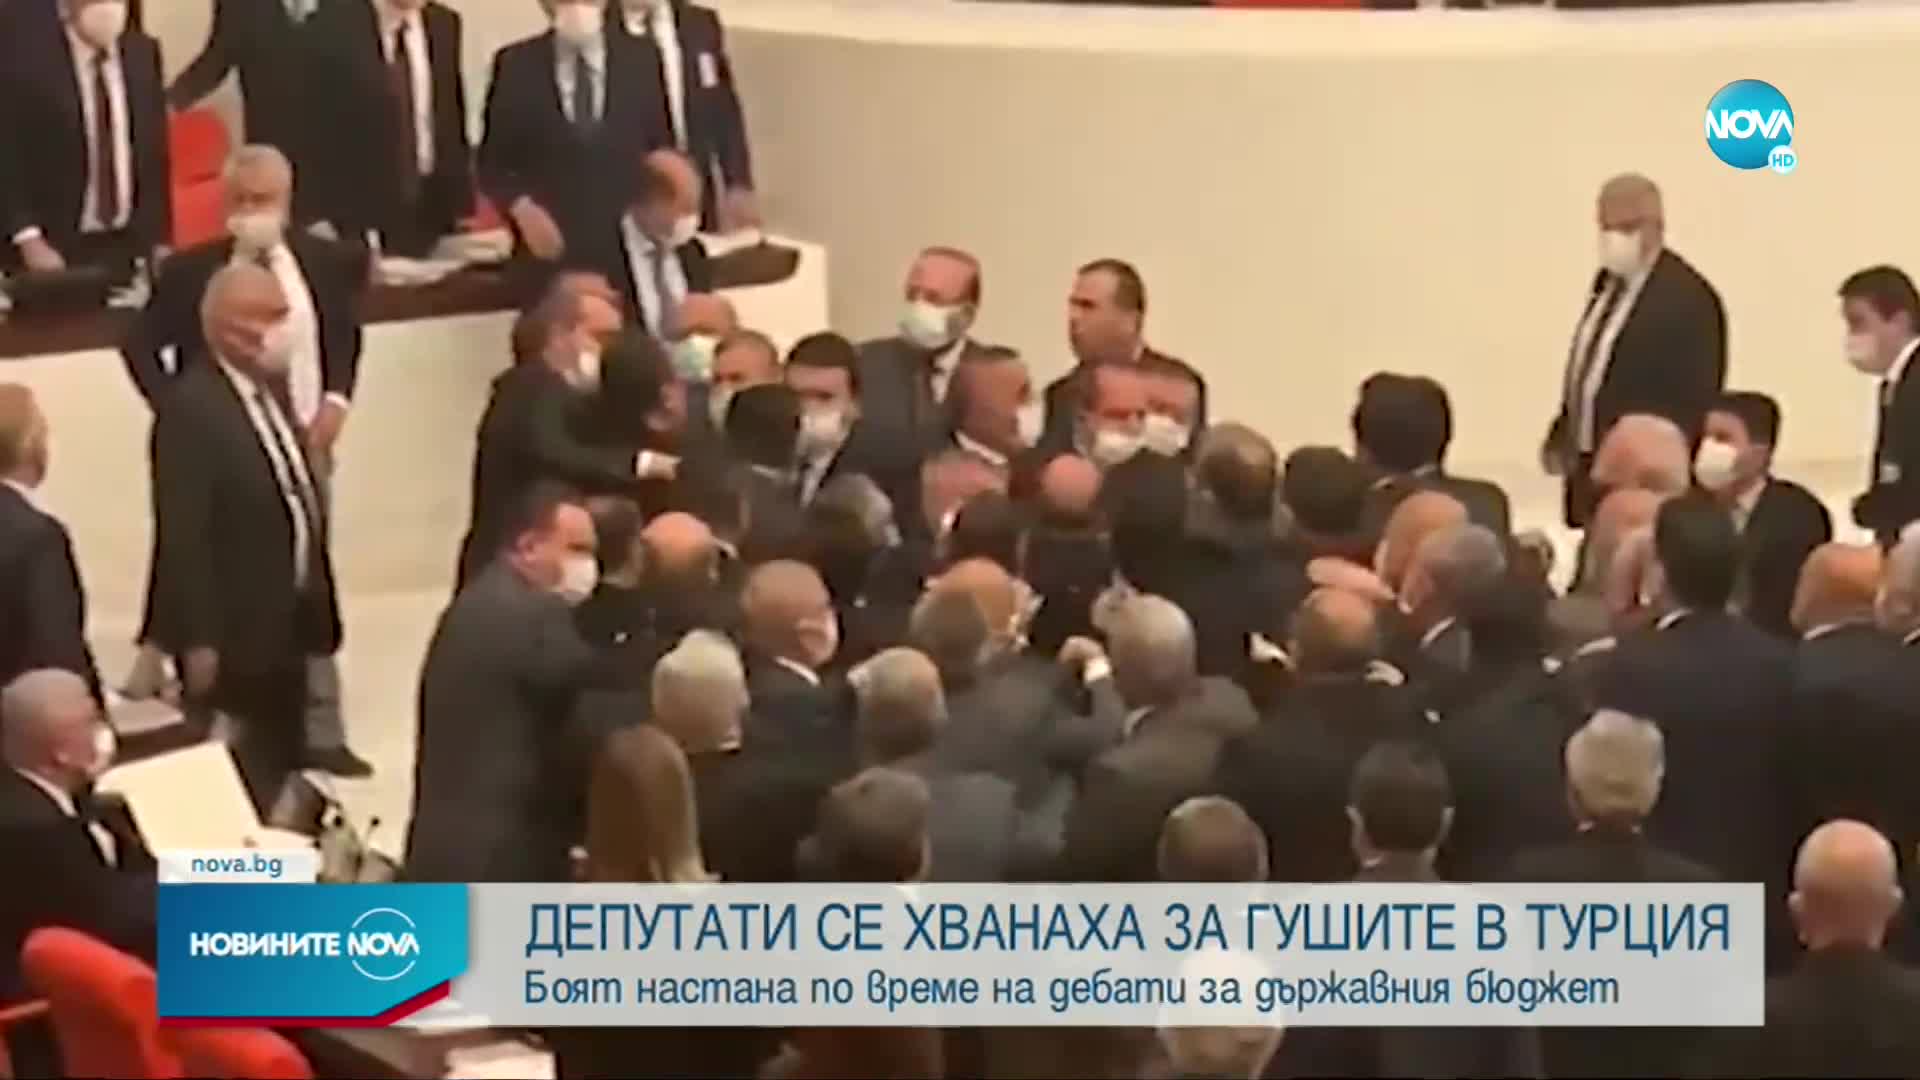 Депутати се сбиха в парламента в Турция